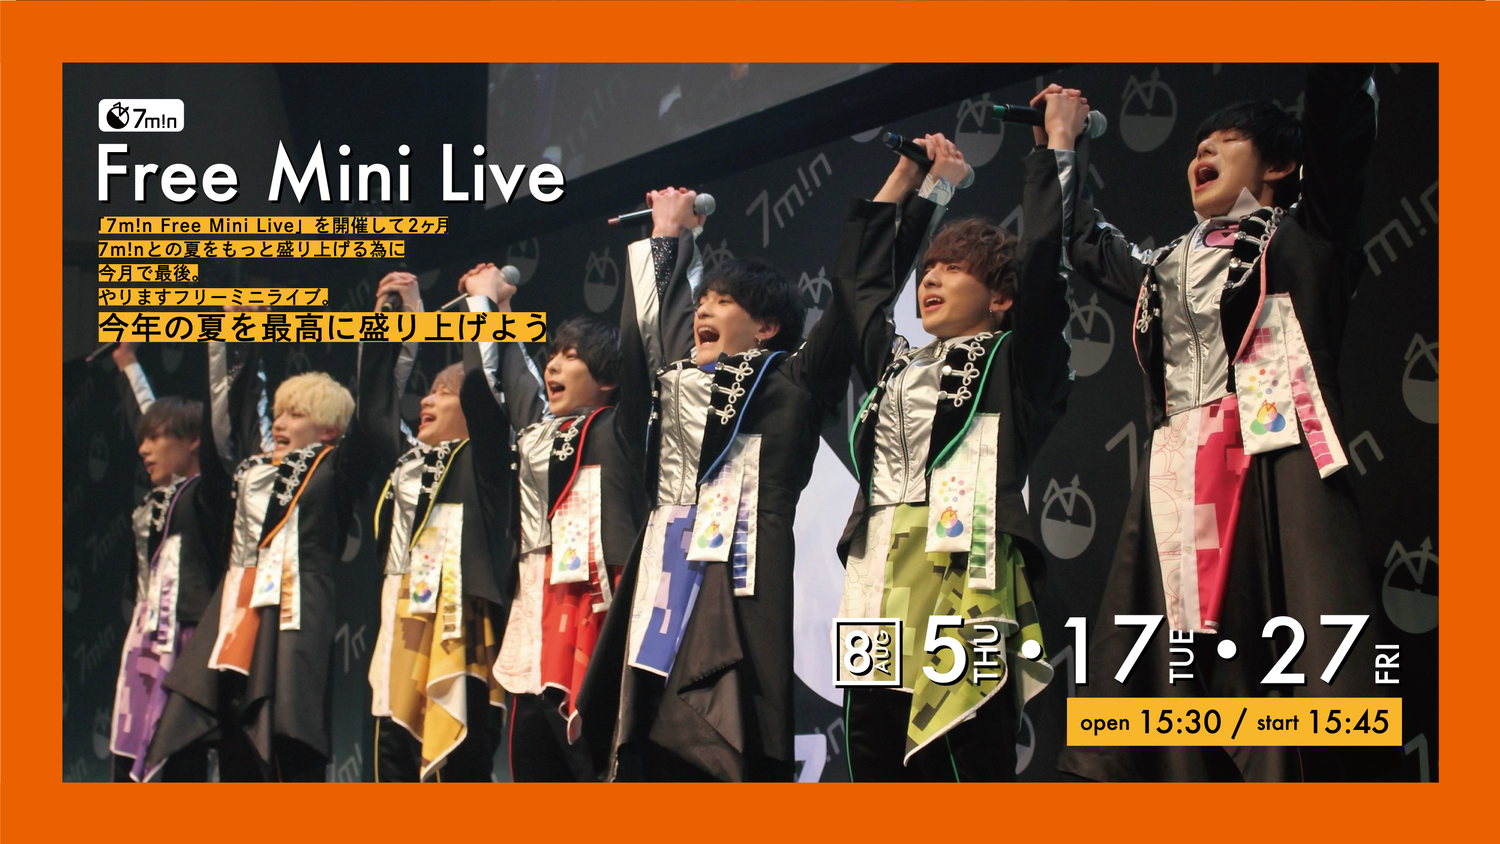 7m!n Free Mini Live